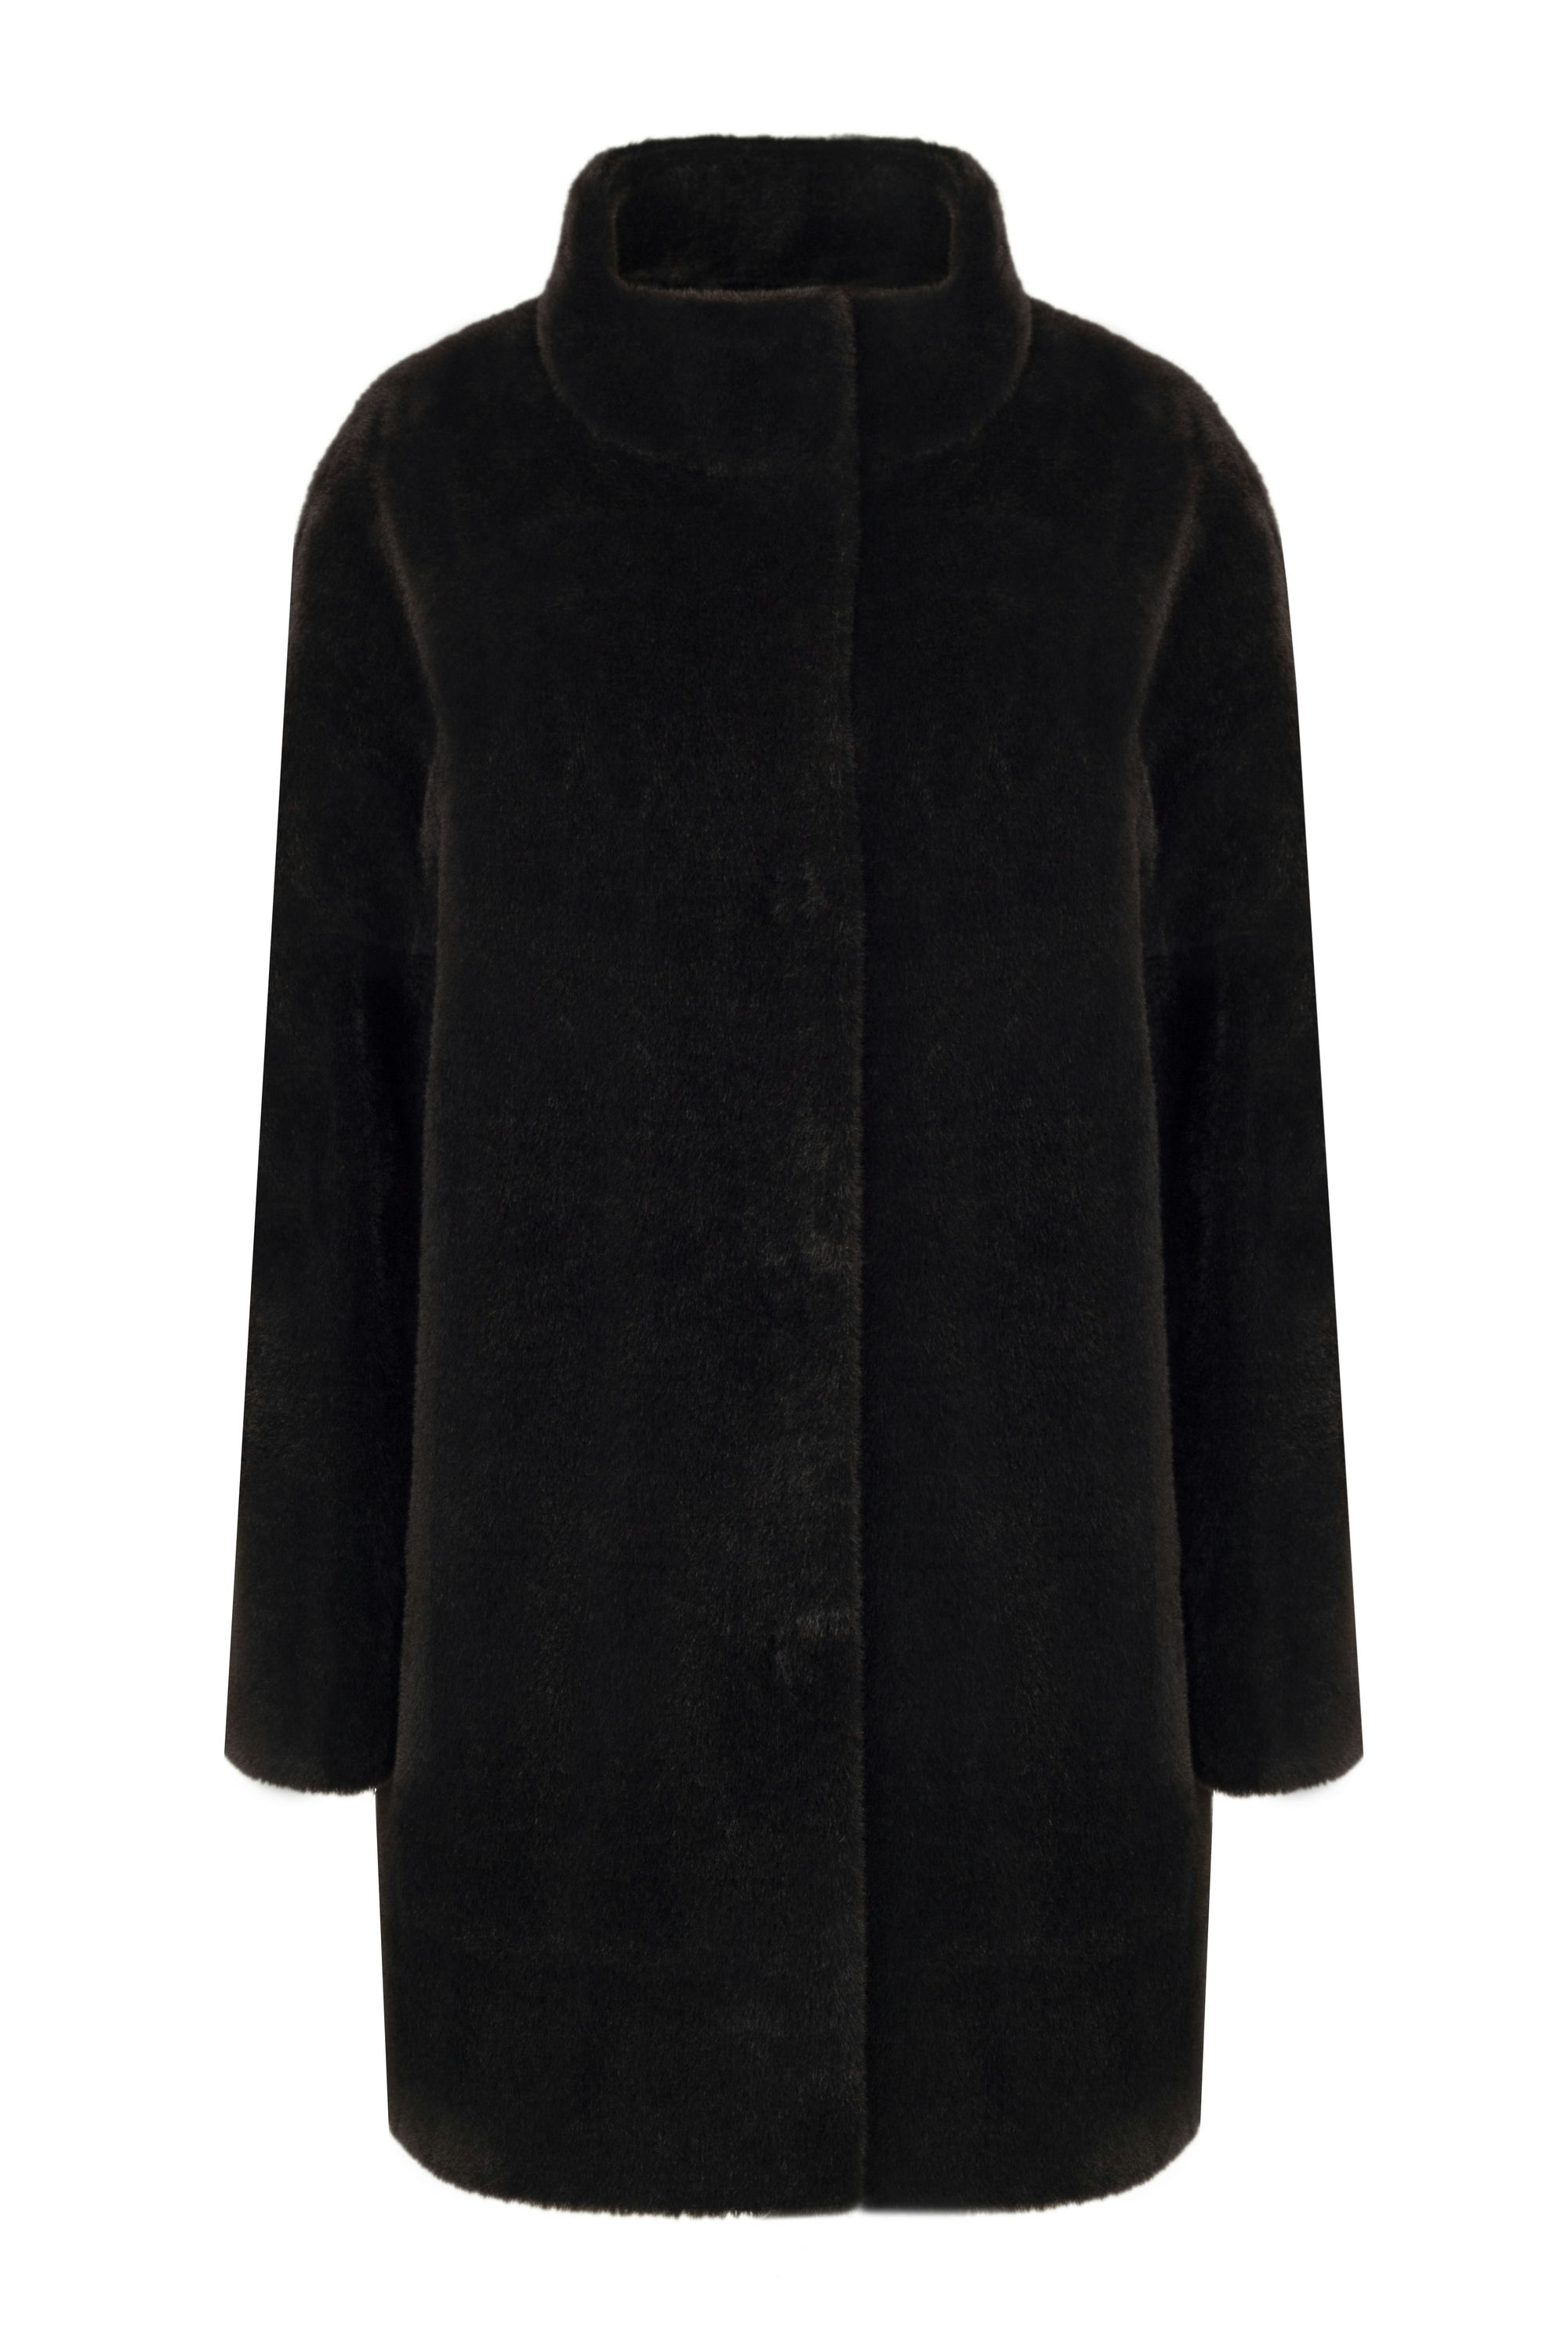 Пальто женское демисезонное 1-530. Фото 1.